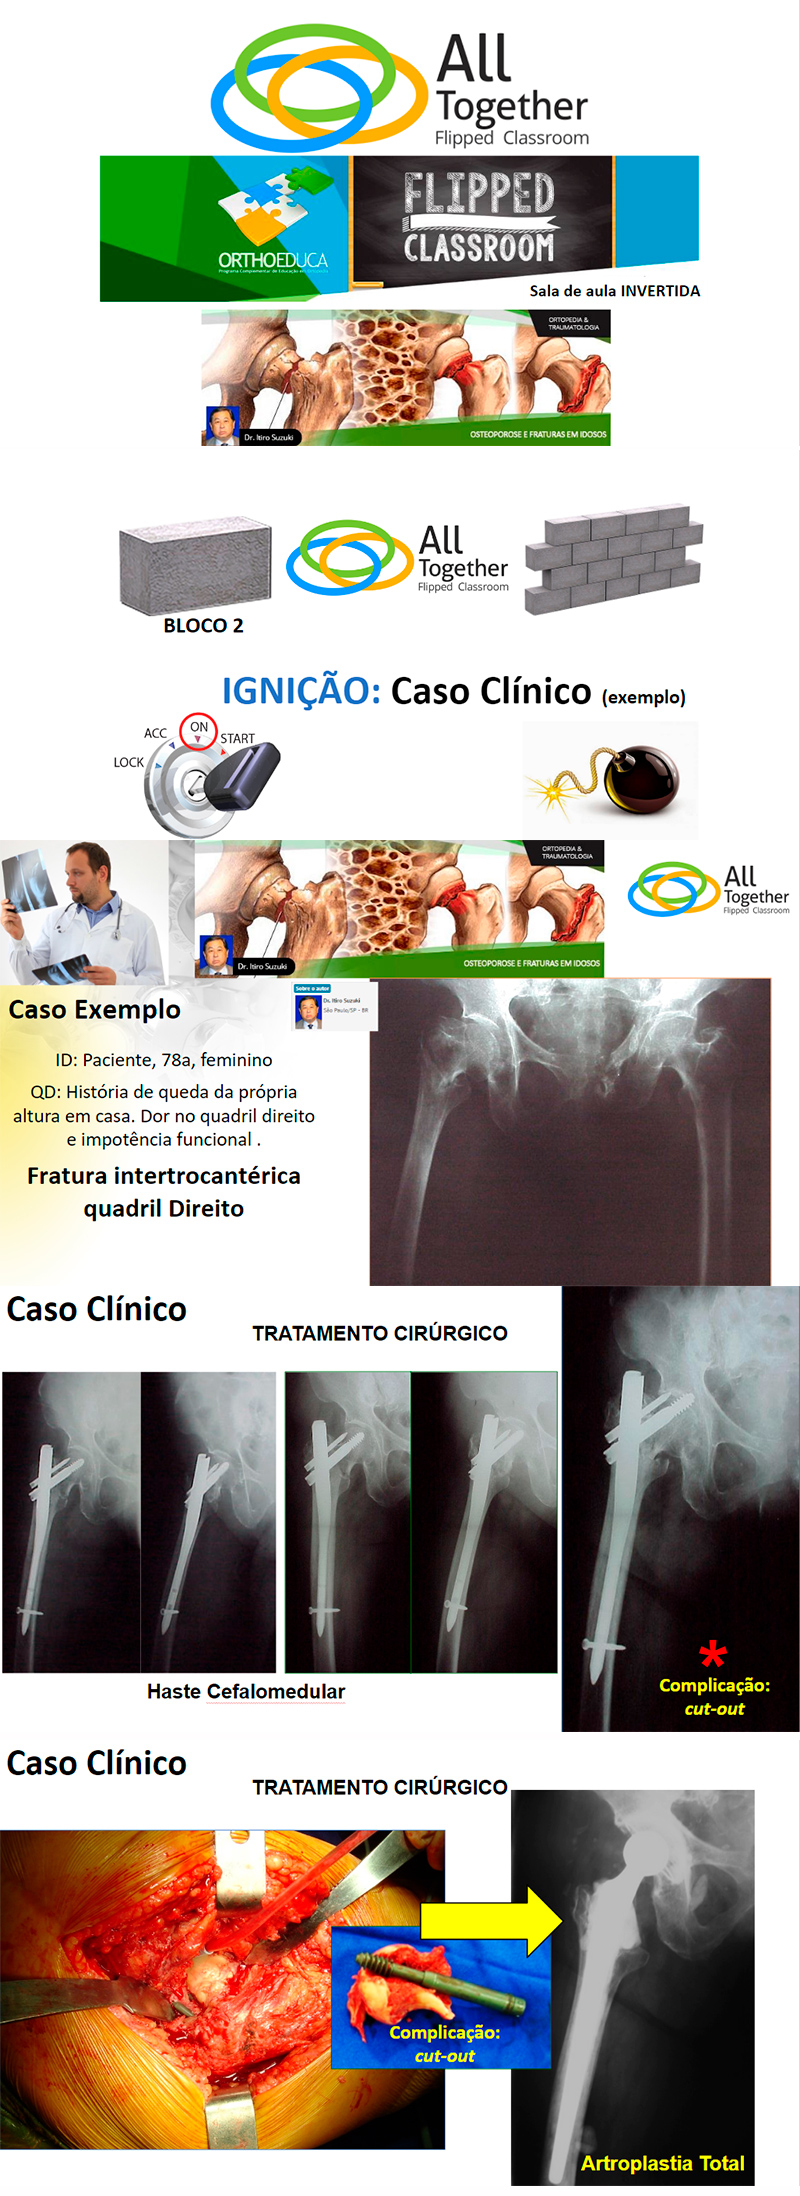 Osteoporose e Fraturas em Idosos - Caso clínico de hoje no All Together às 12h Participe!